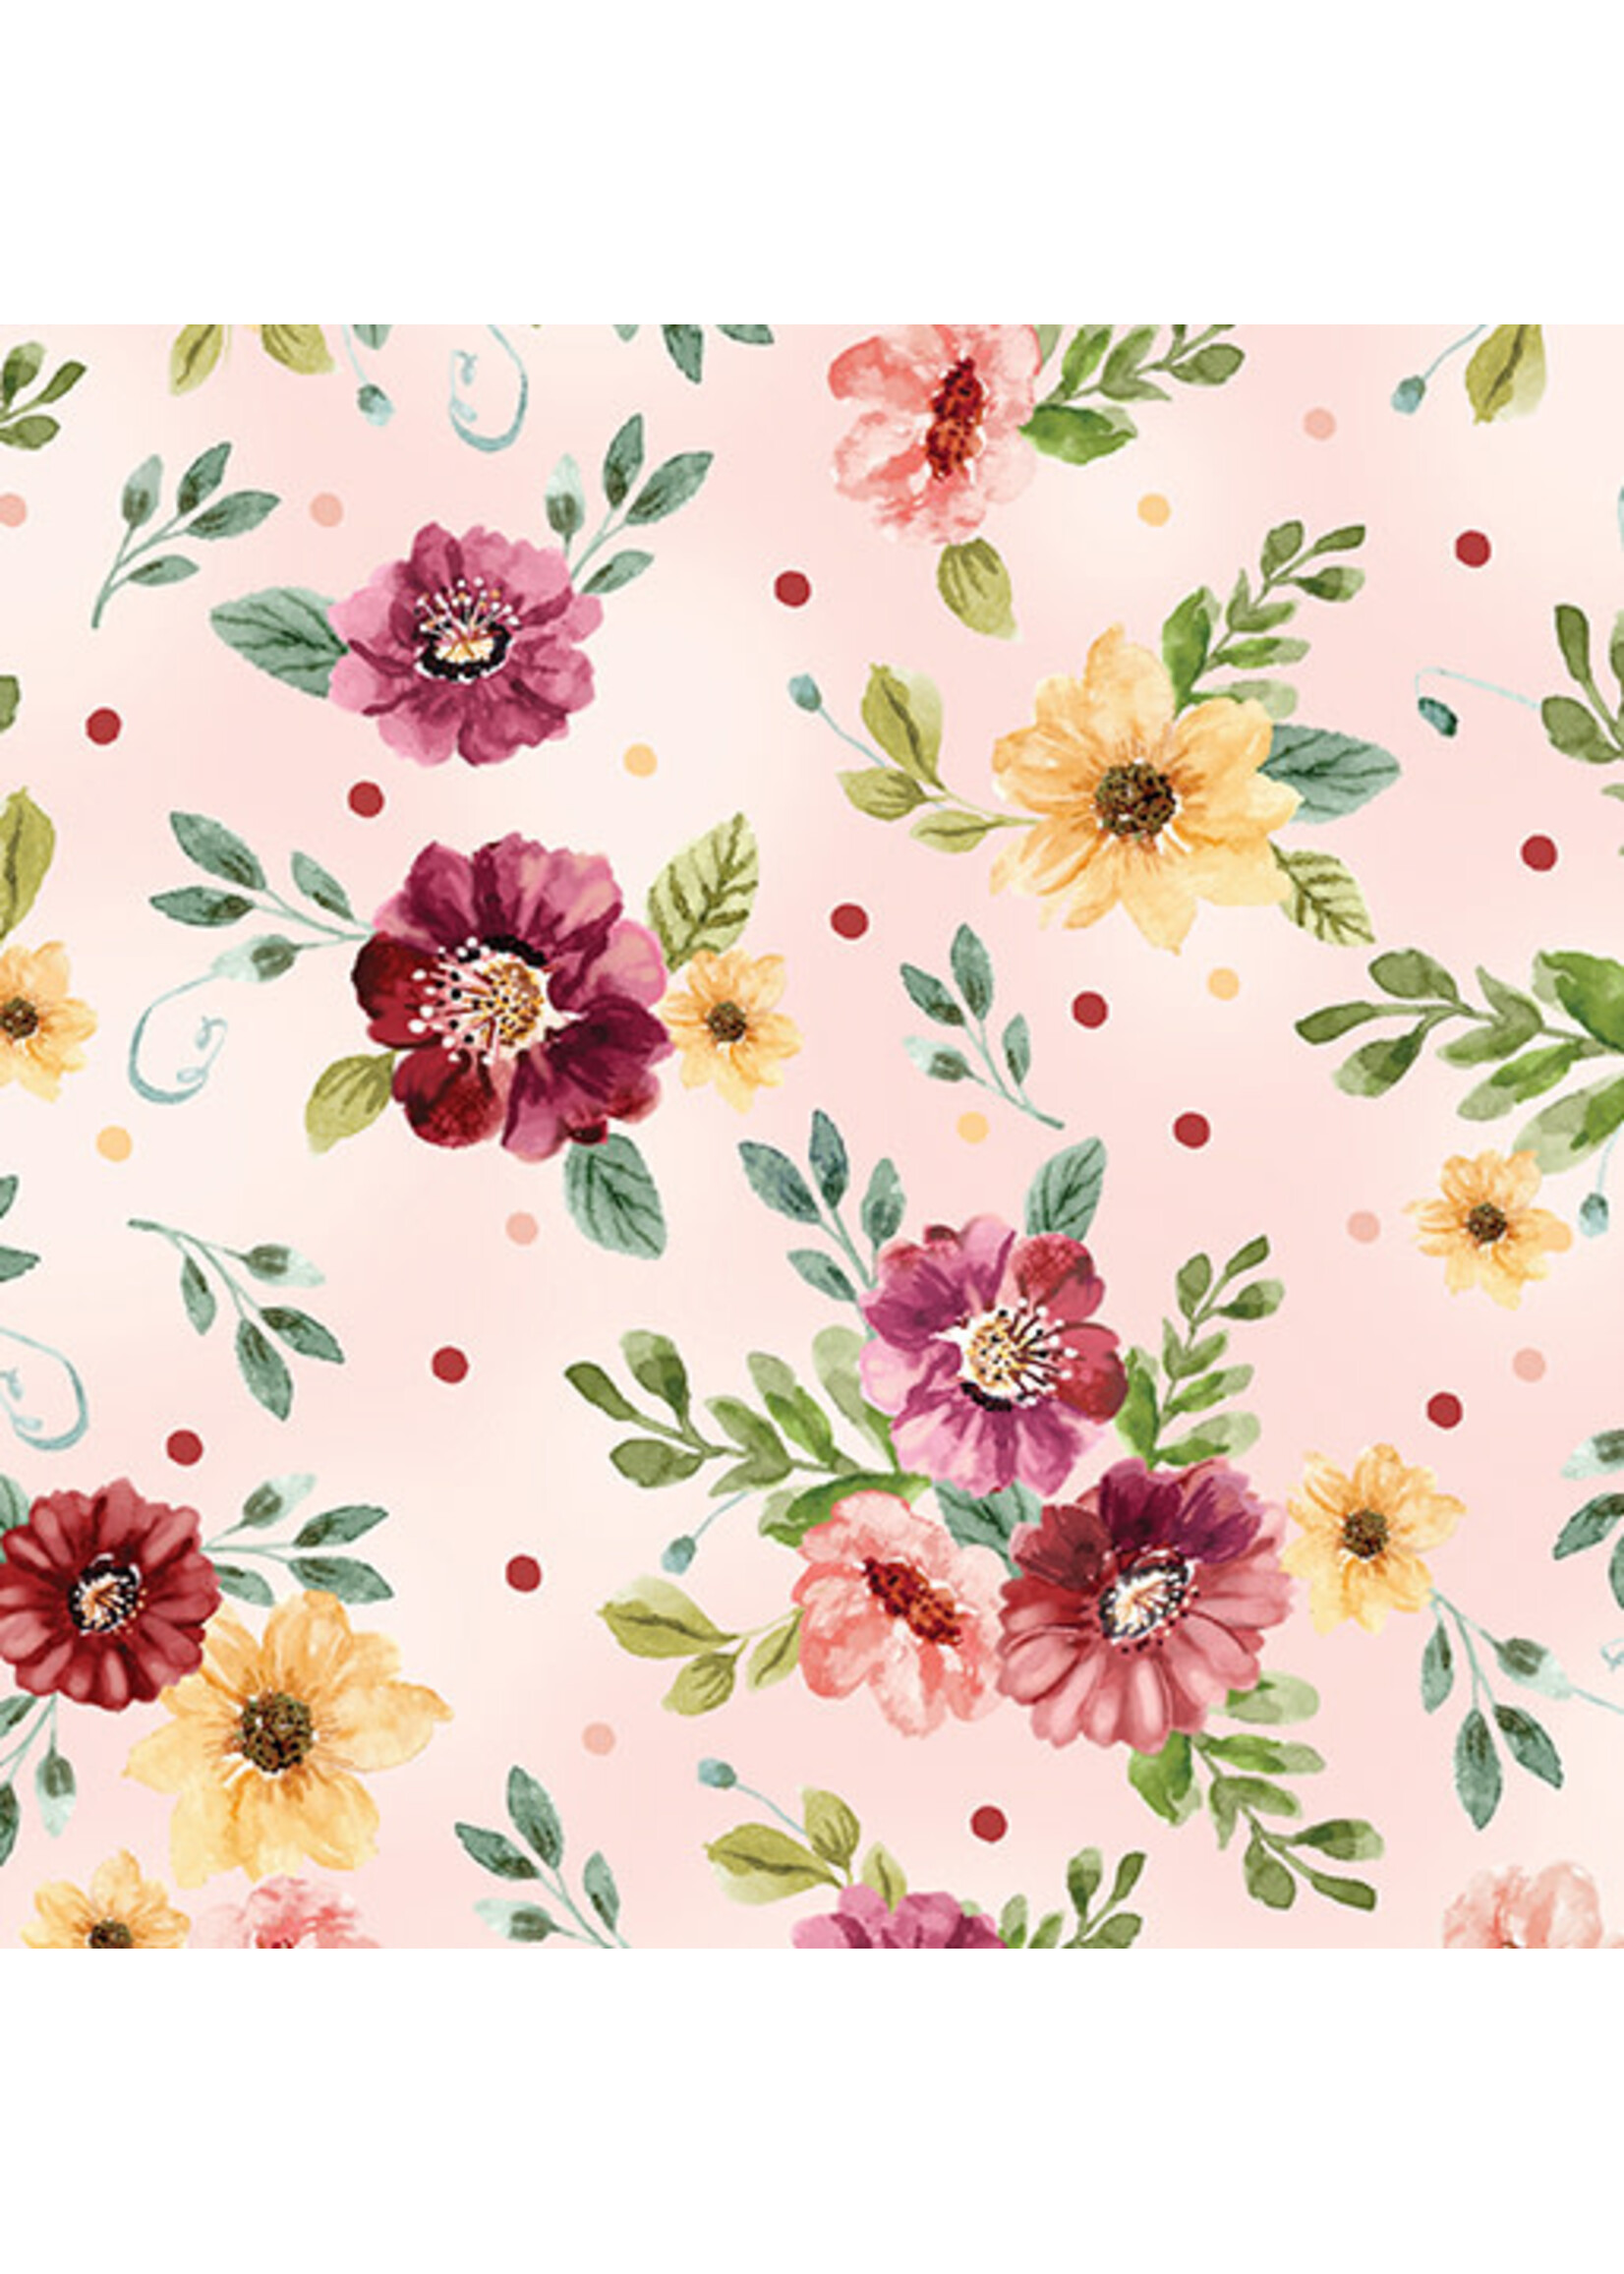 Benartex Studio Sew in Love - Sweet Blooms - Light Pink - 429701